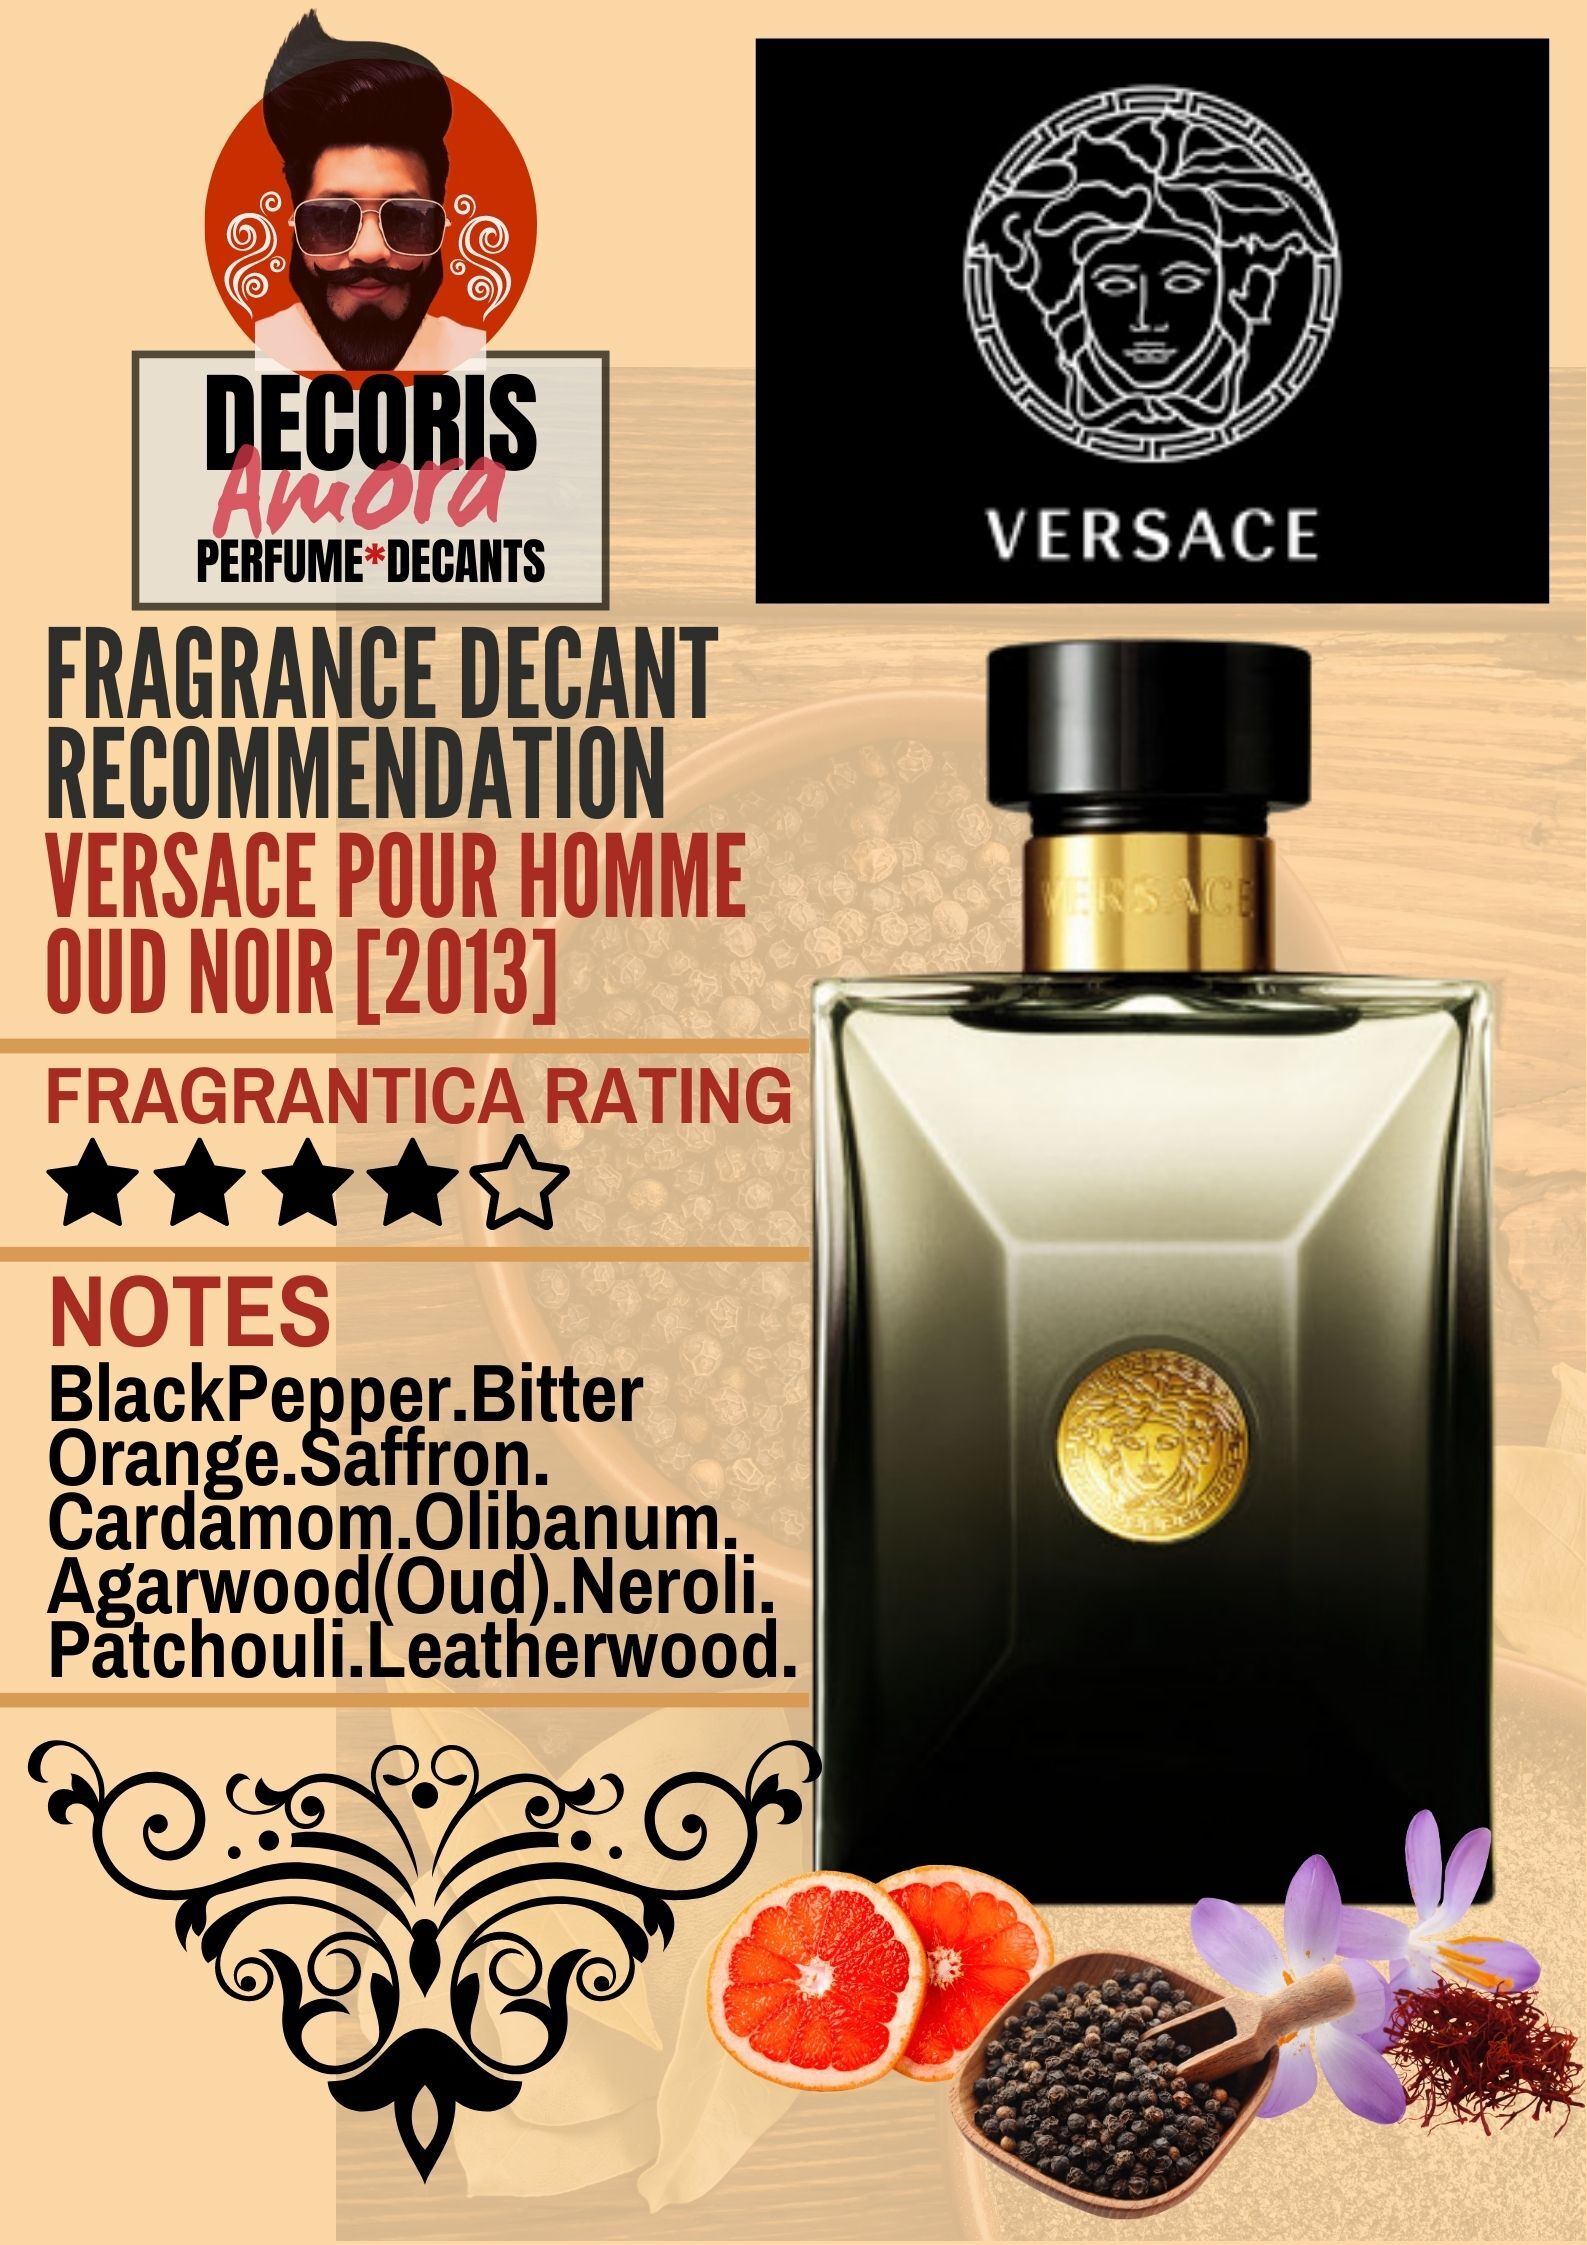 Versace Oud Noir Pour Homme - Perfume Decant – Decoris Amora Perfume Decant